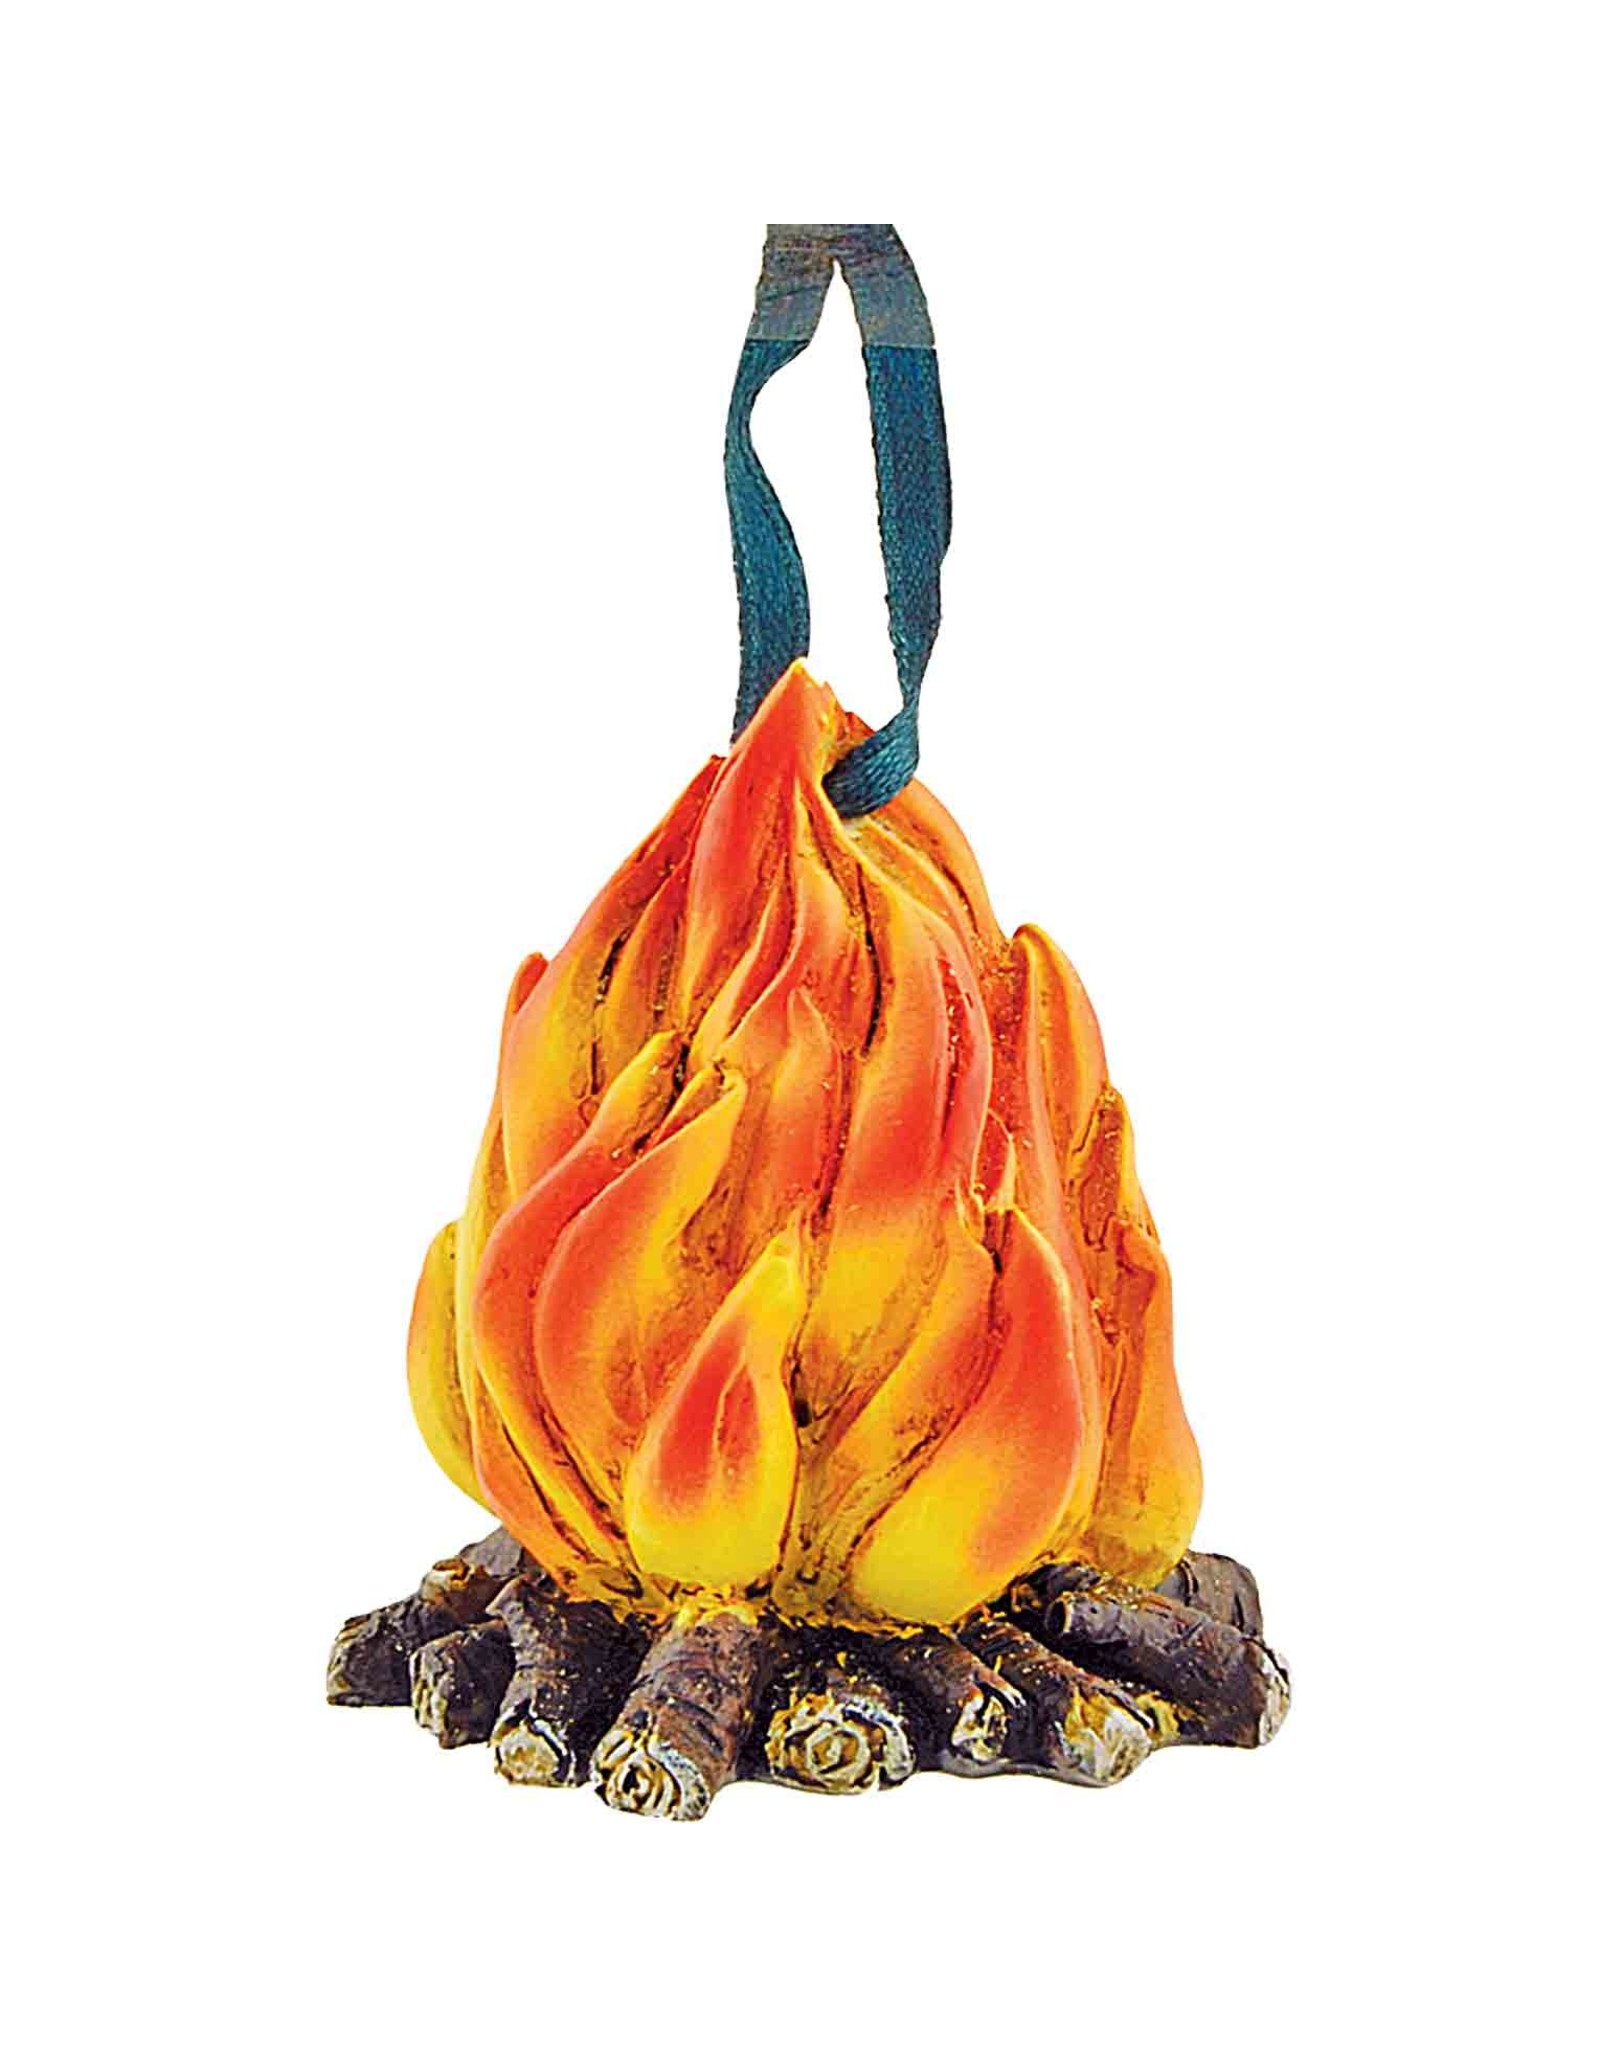 Campfire Ornament 6/Box single